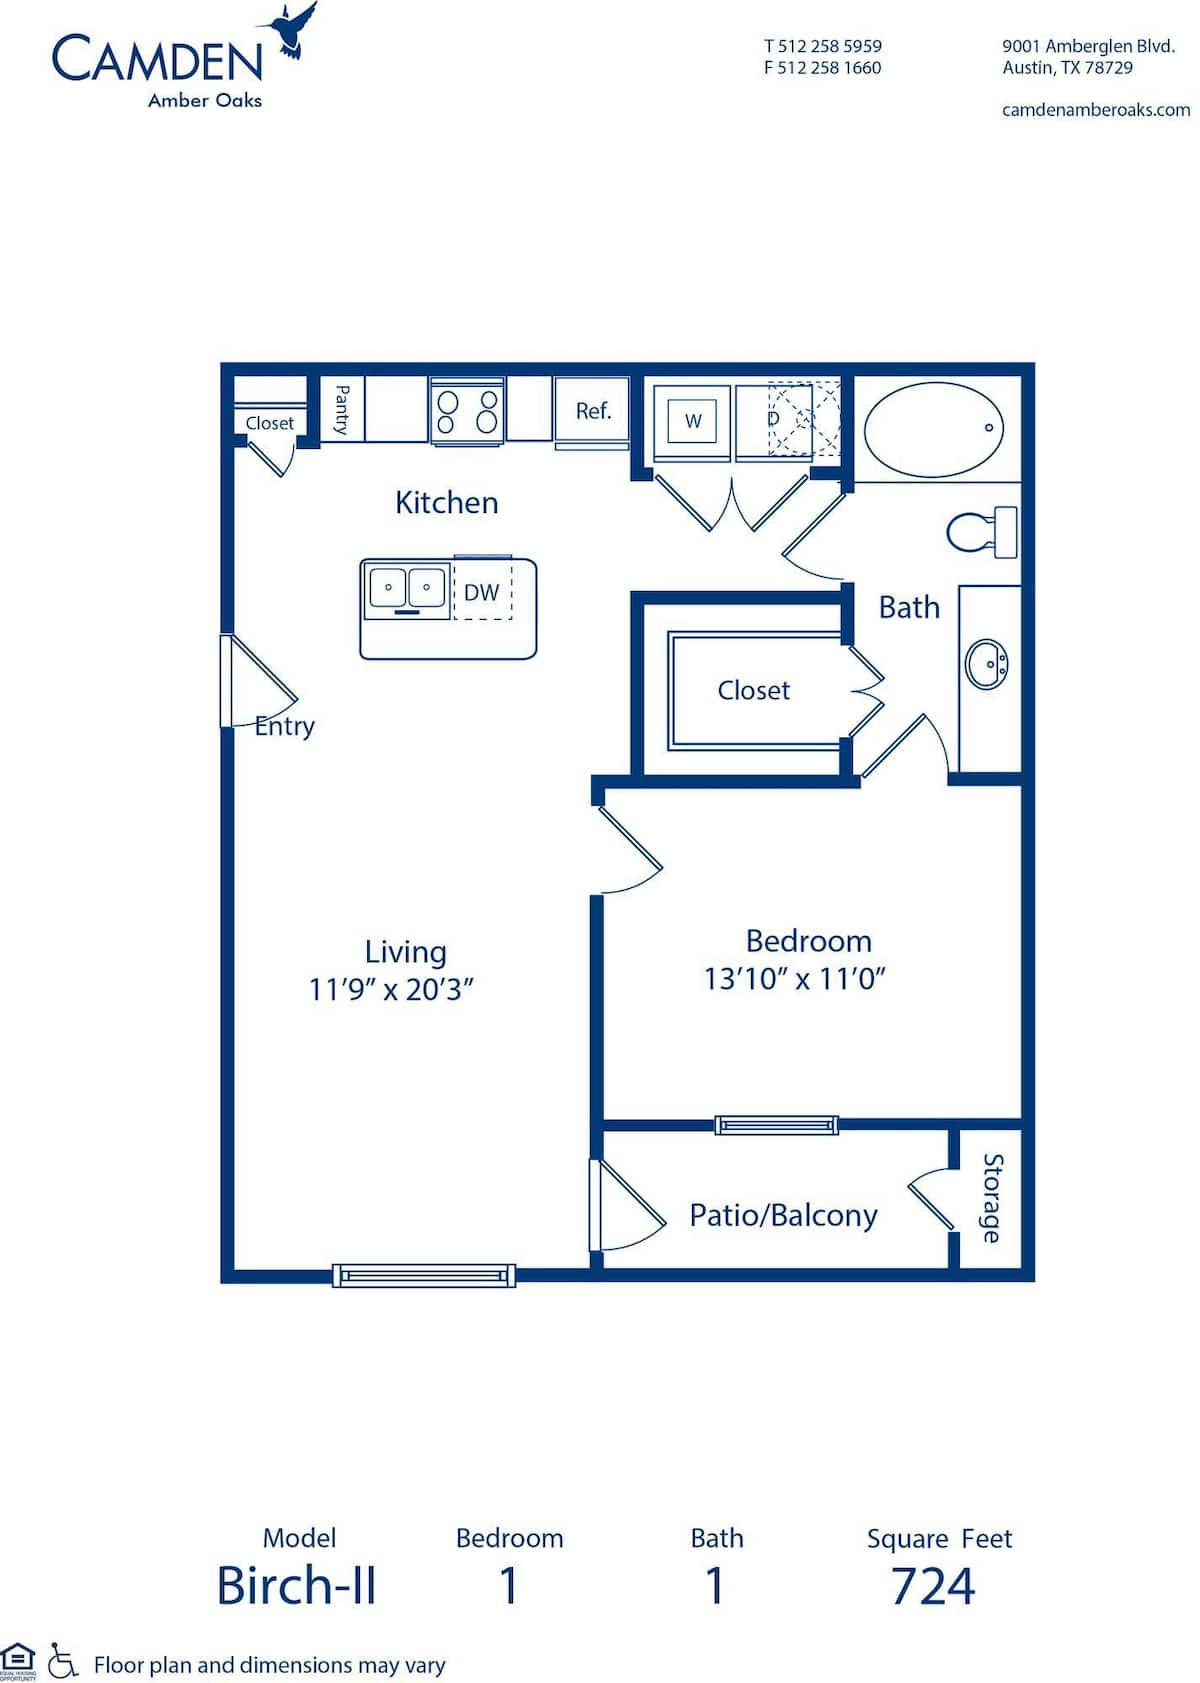 Floorplan diagram for Birch - II, showing 1 bedroom